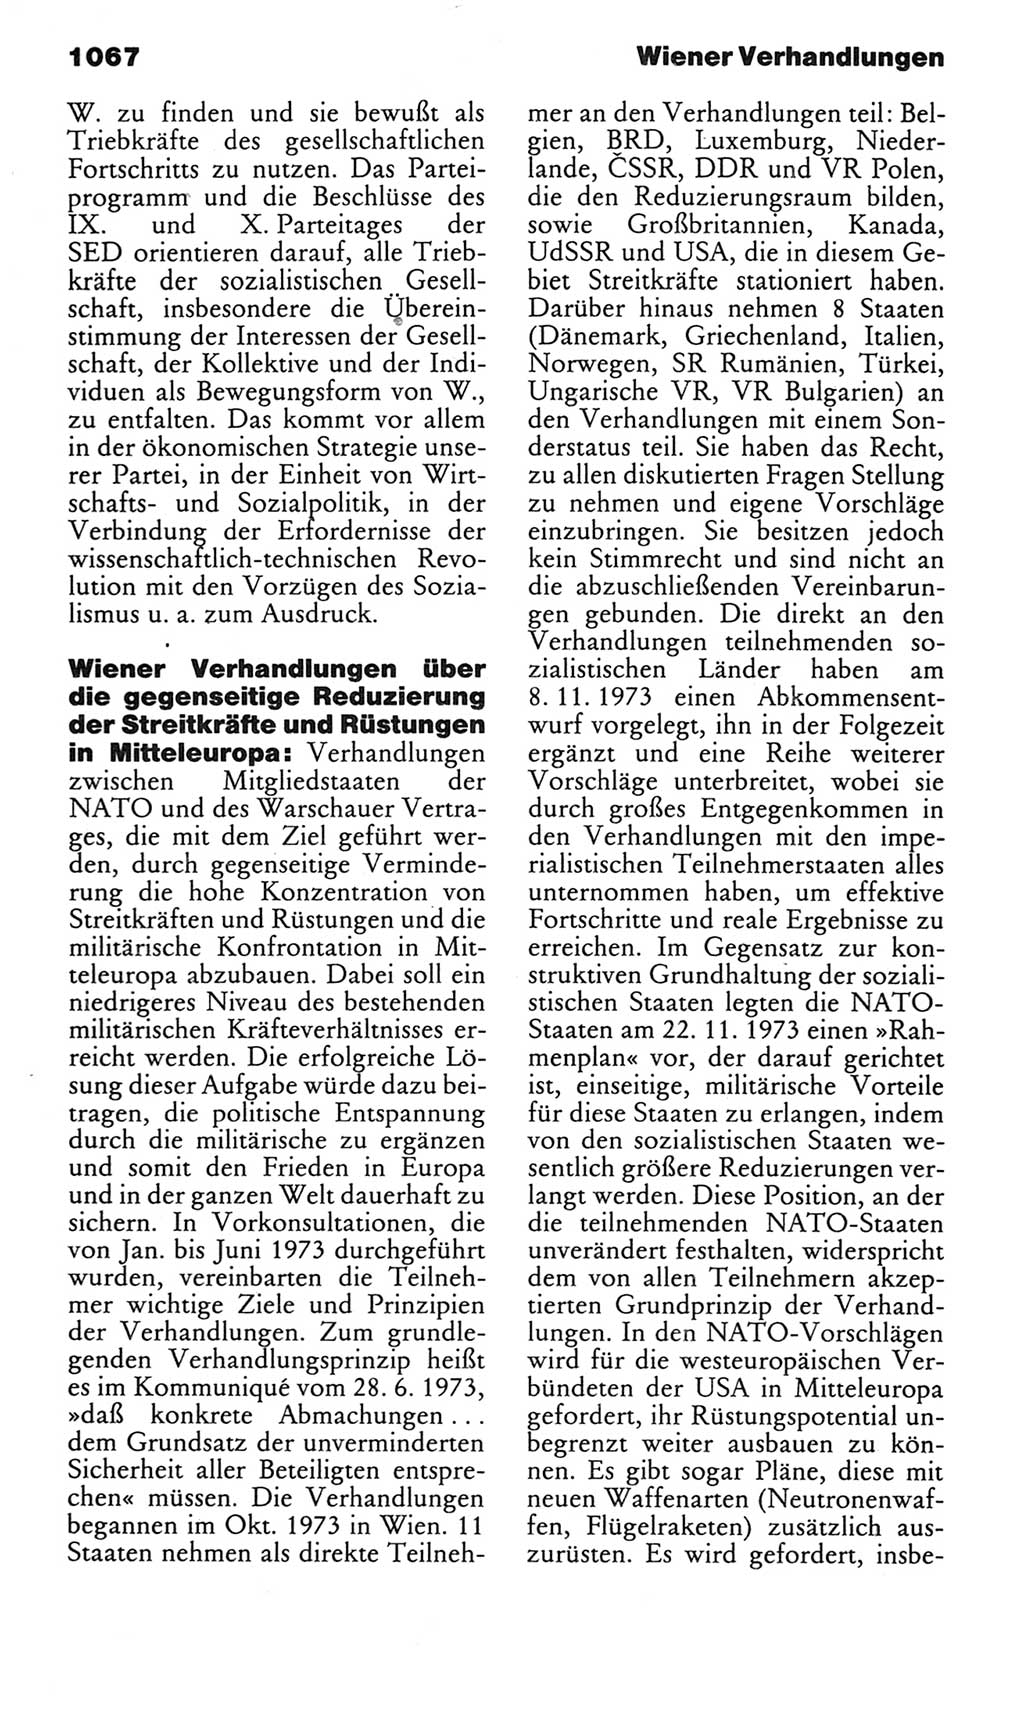 Kleines politisches Wörterbuch [Deutsche Demokratische Republik (DDR)] 1983, Seite 1067 (Kl. pol. Wb. DDR 1983, S. 1067)